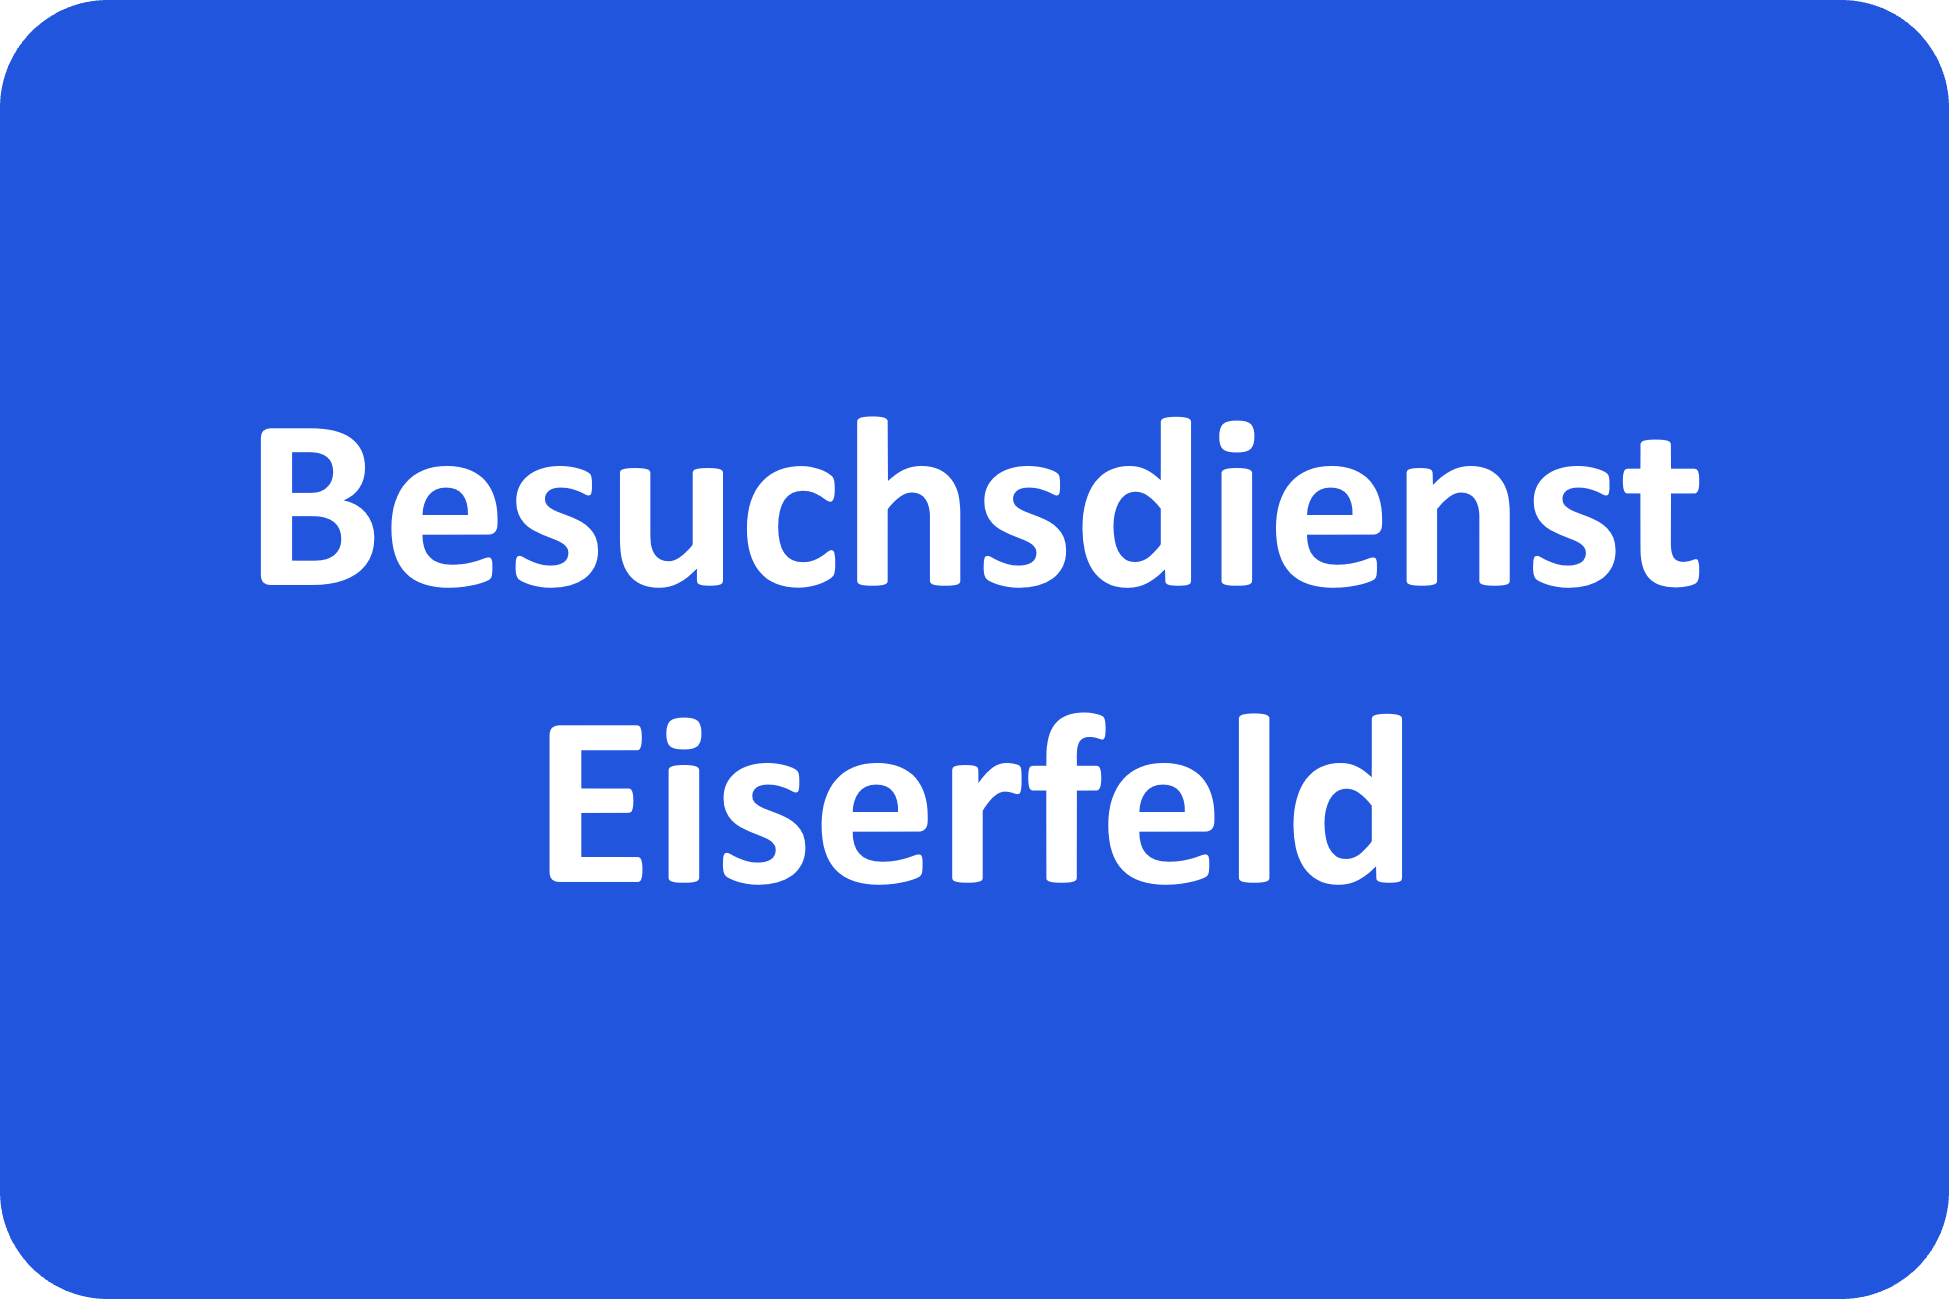 Besuchsdienst Eiserfeld